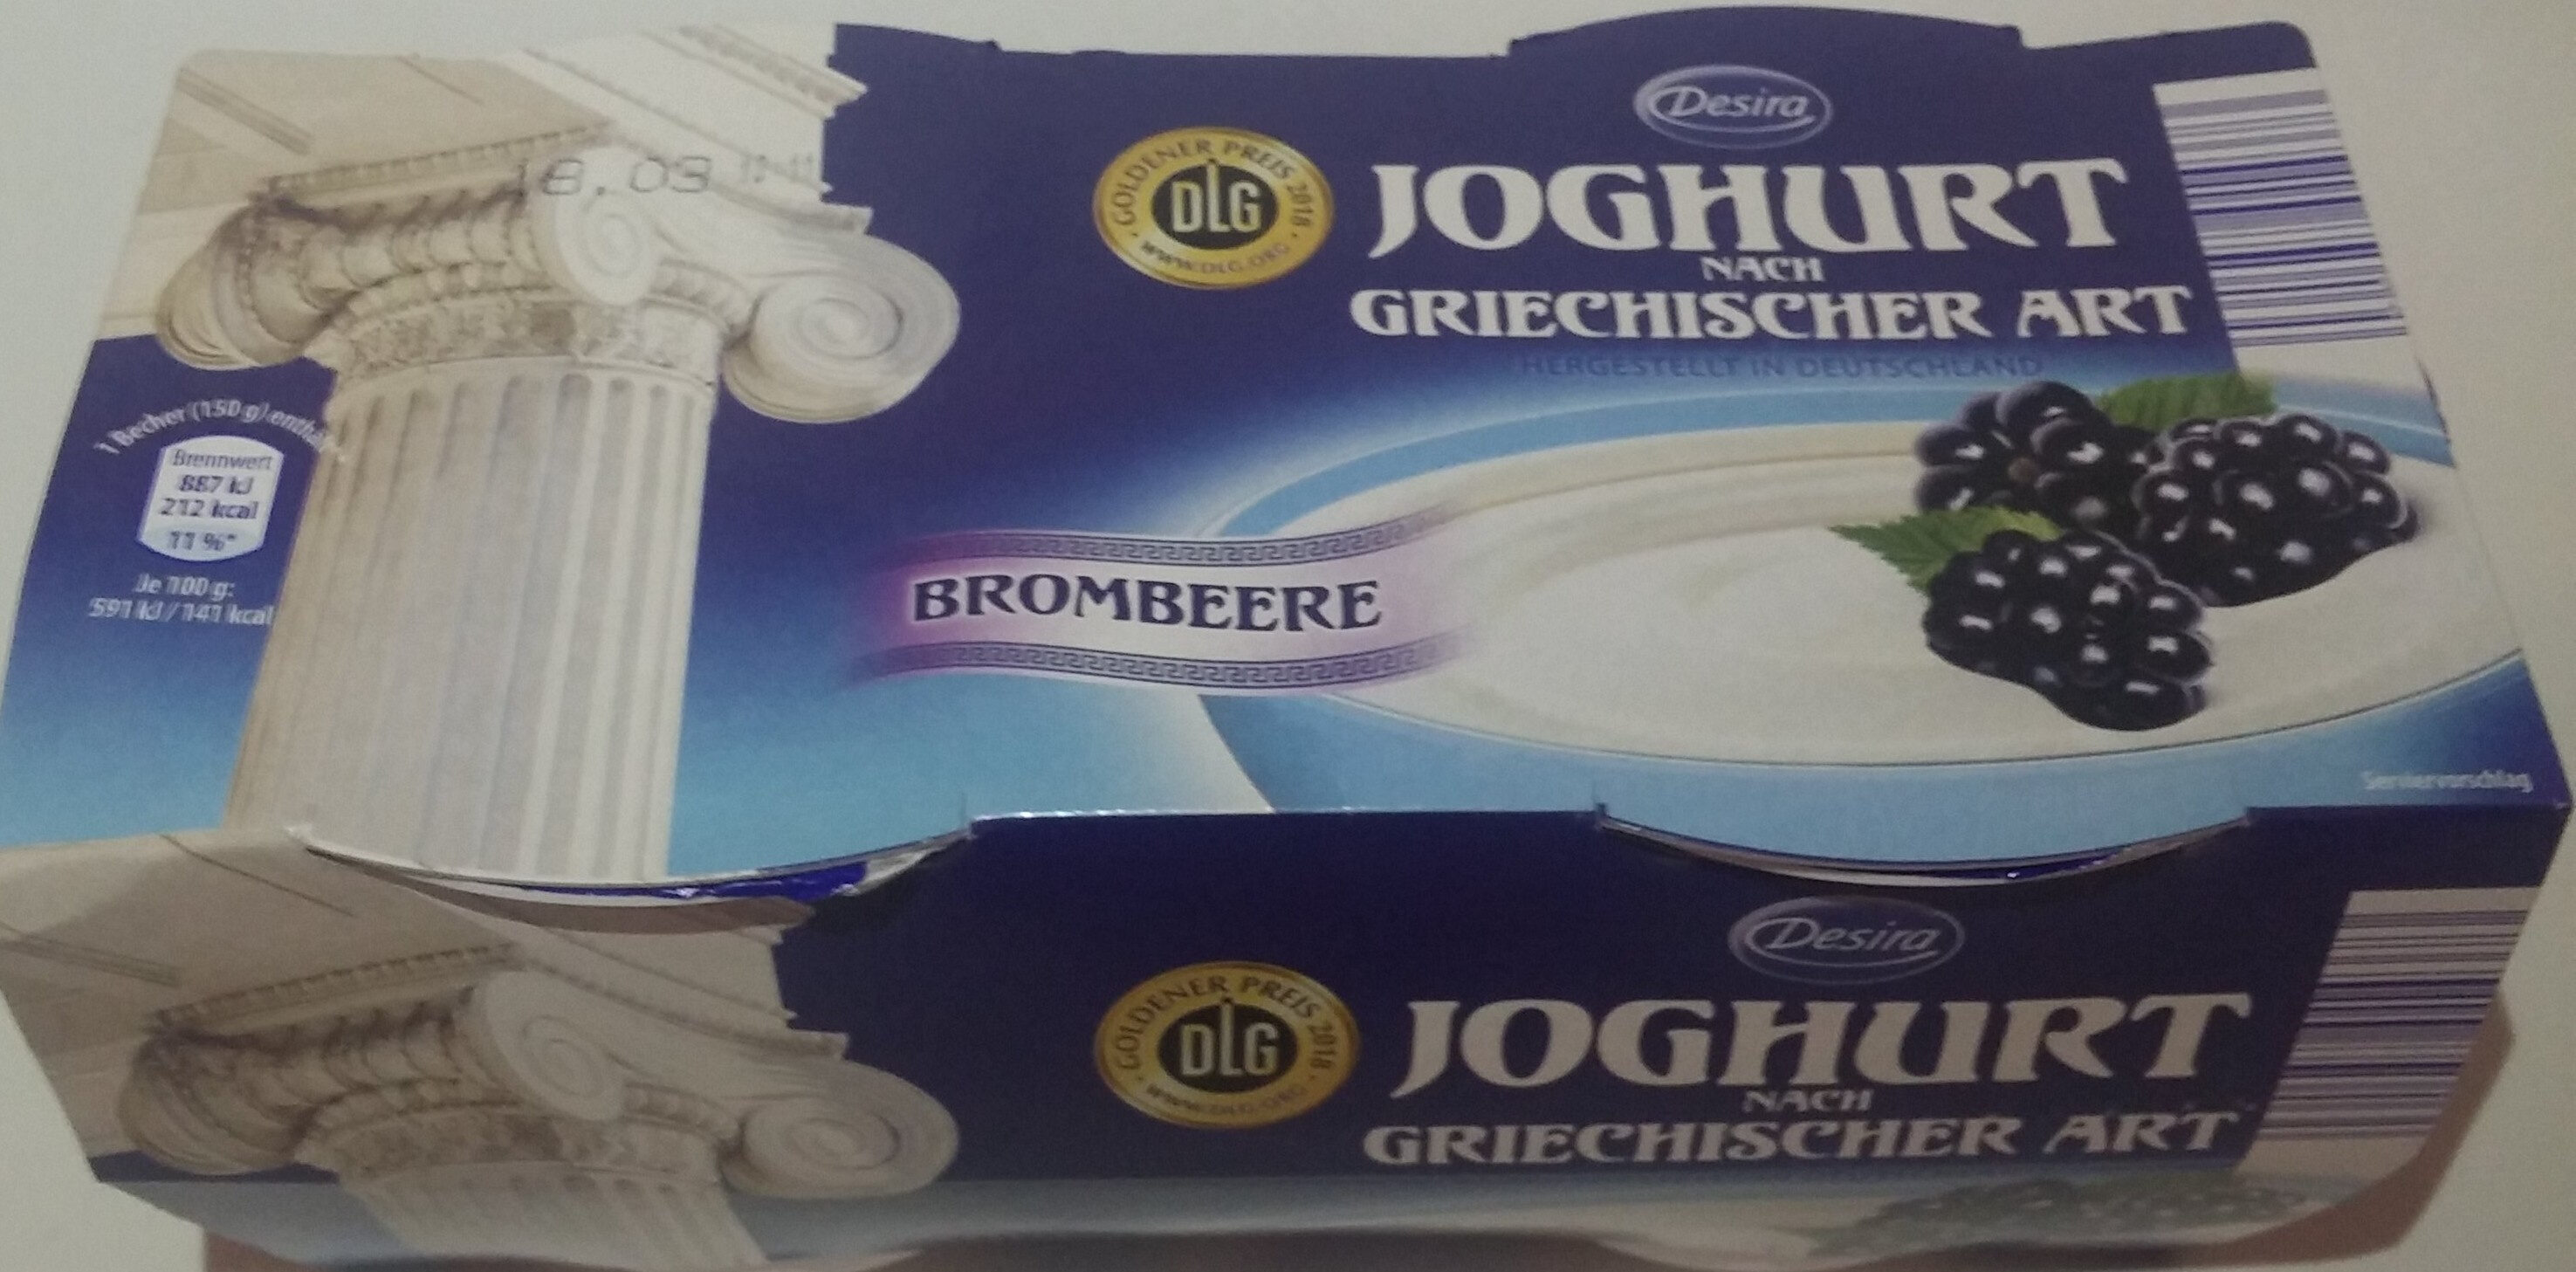 Joghurt nach griechischer Art - Produkt